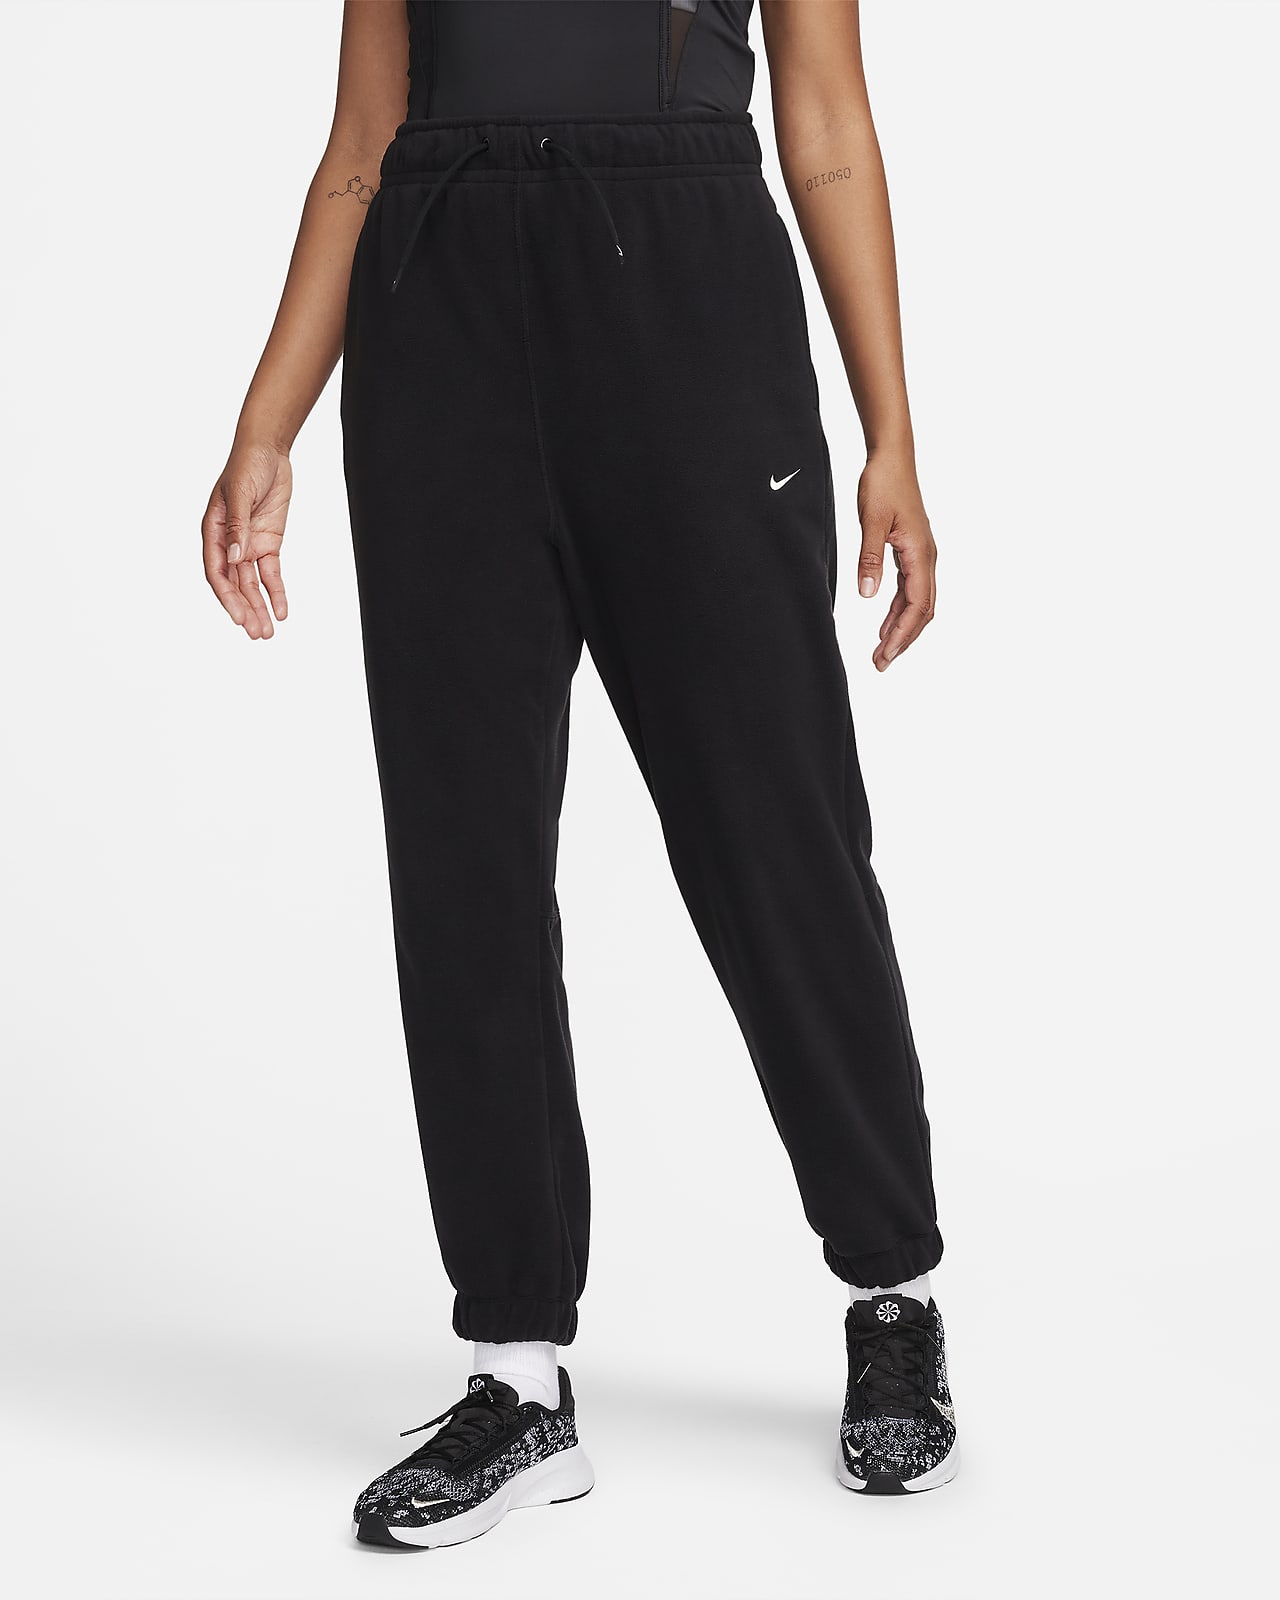 Pantalon à coupe ample en tissu Fleece Nike Therma-FIT One pour femme